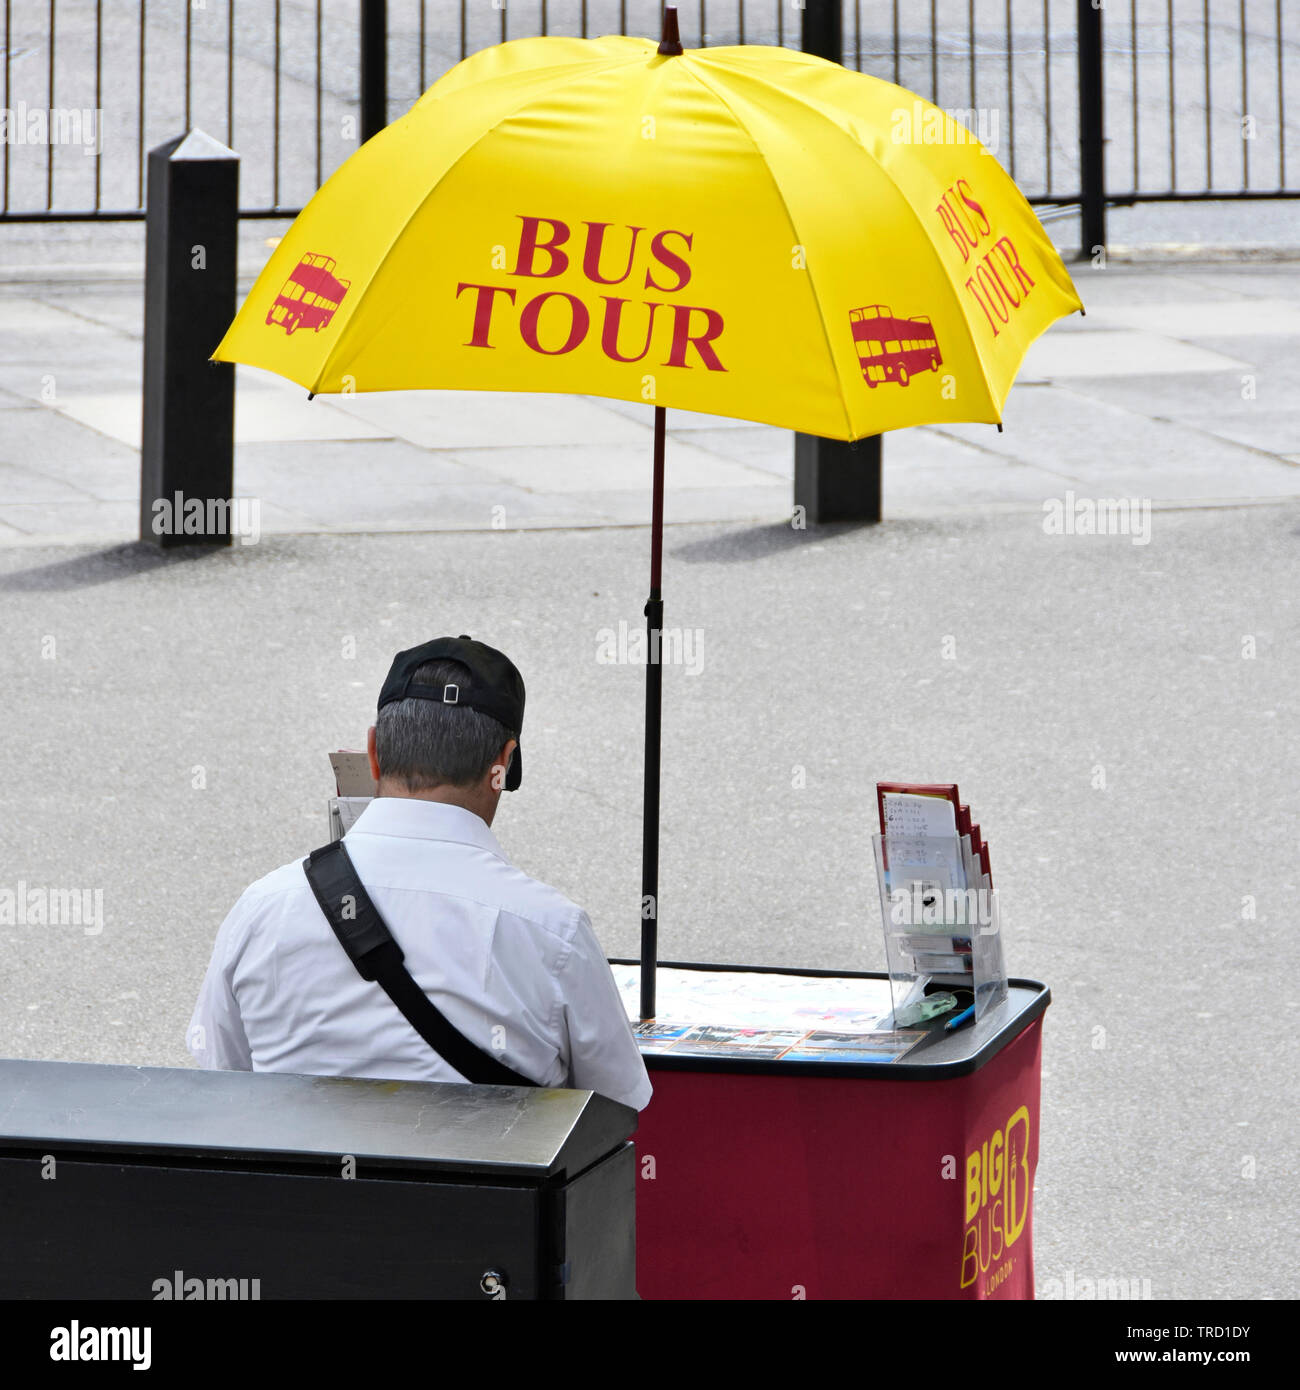 Scène de rue à Londres tourisme tour bus vendeur assis sur la chaussée au petit bureau sous Parapluie publicitaire jaune chaude journée d'été l'abbaye de Westminster UK Banque D'Images